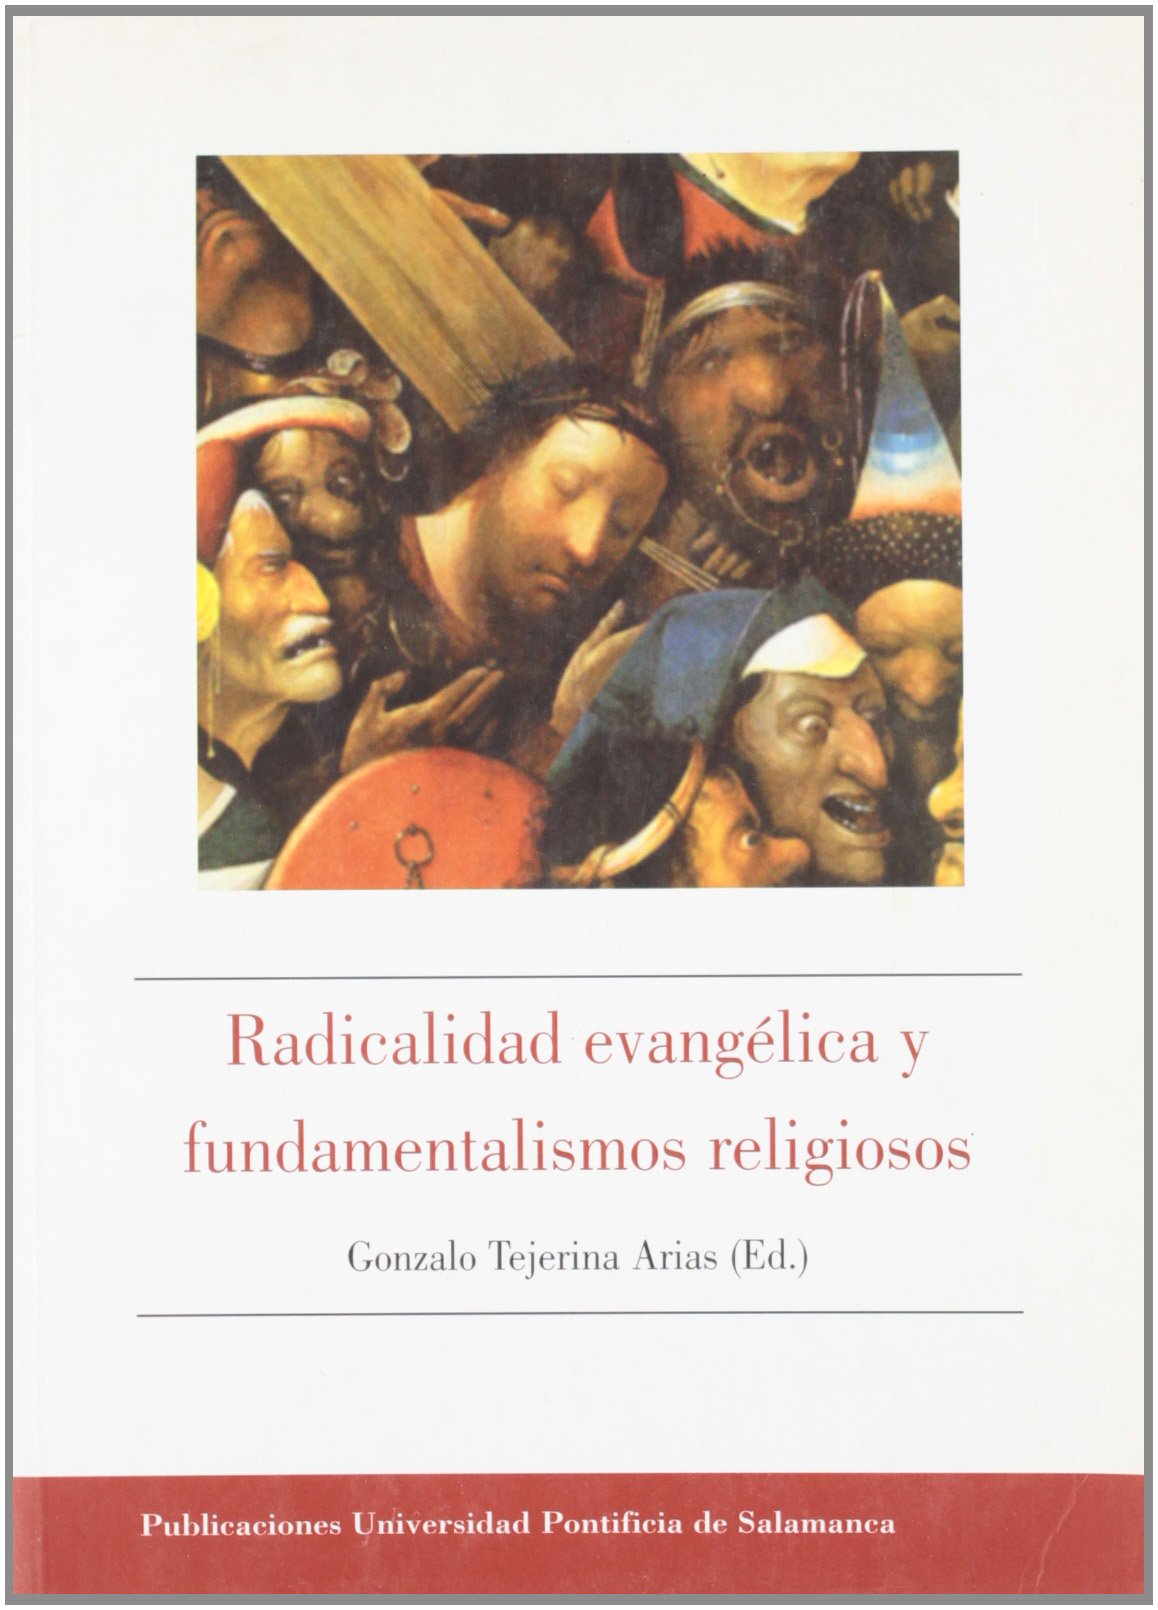 Imagen de portada del libro Radicalidad evangélica y fundamentalismos religiosos